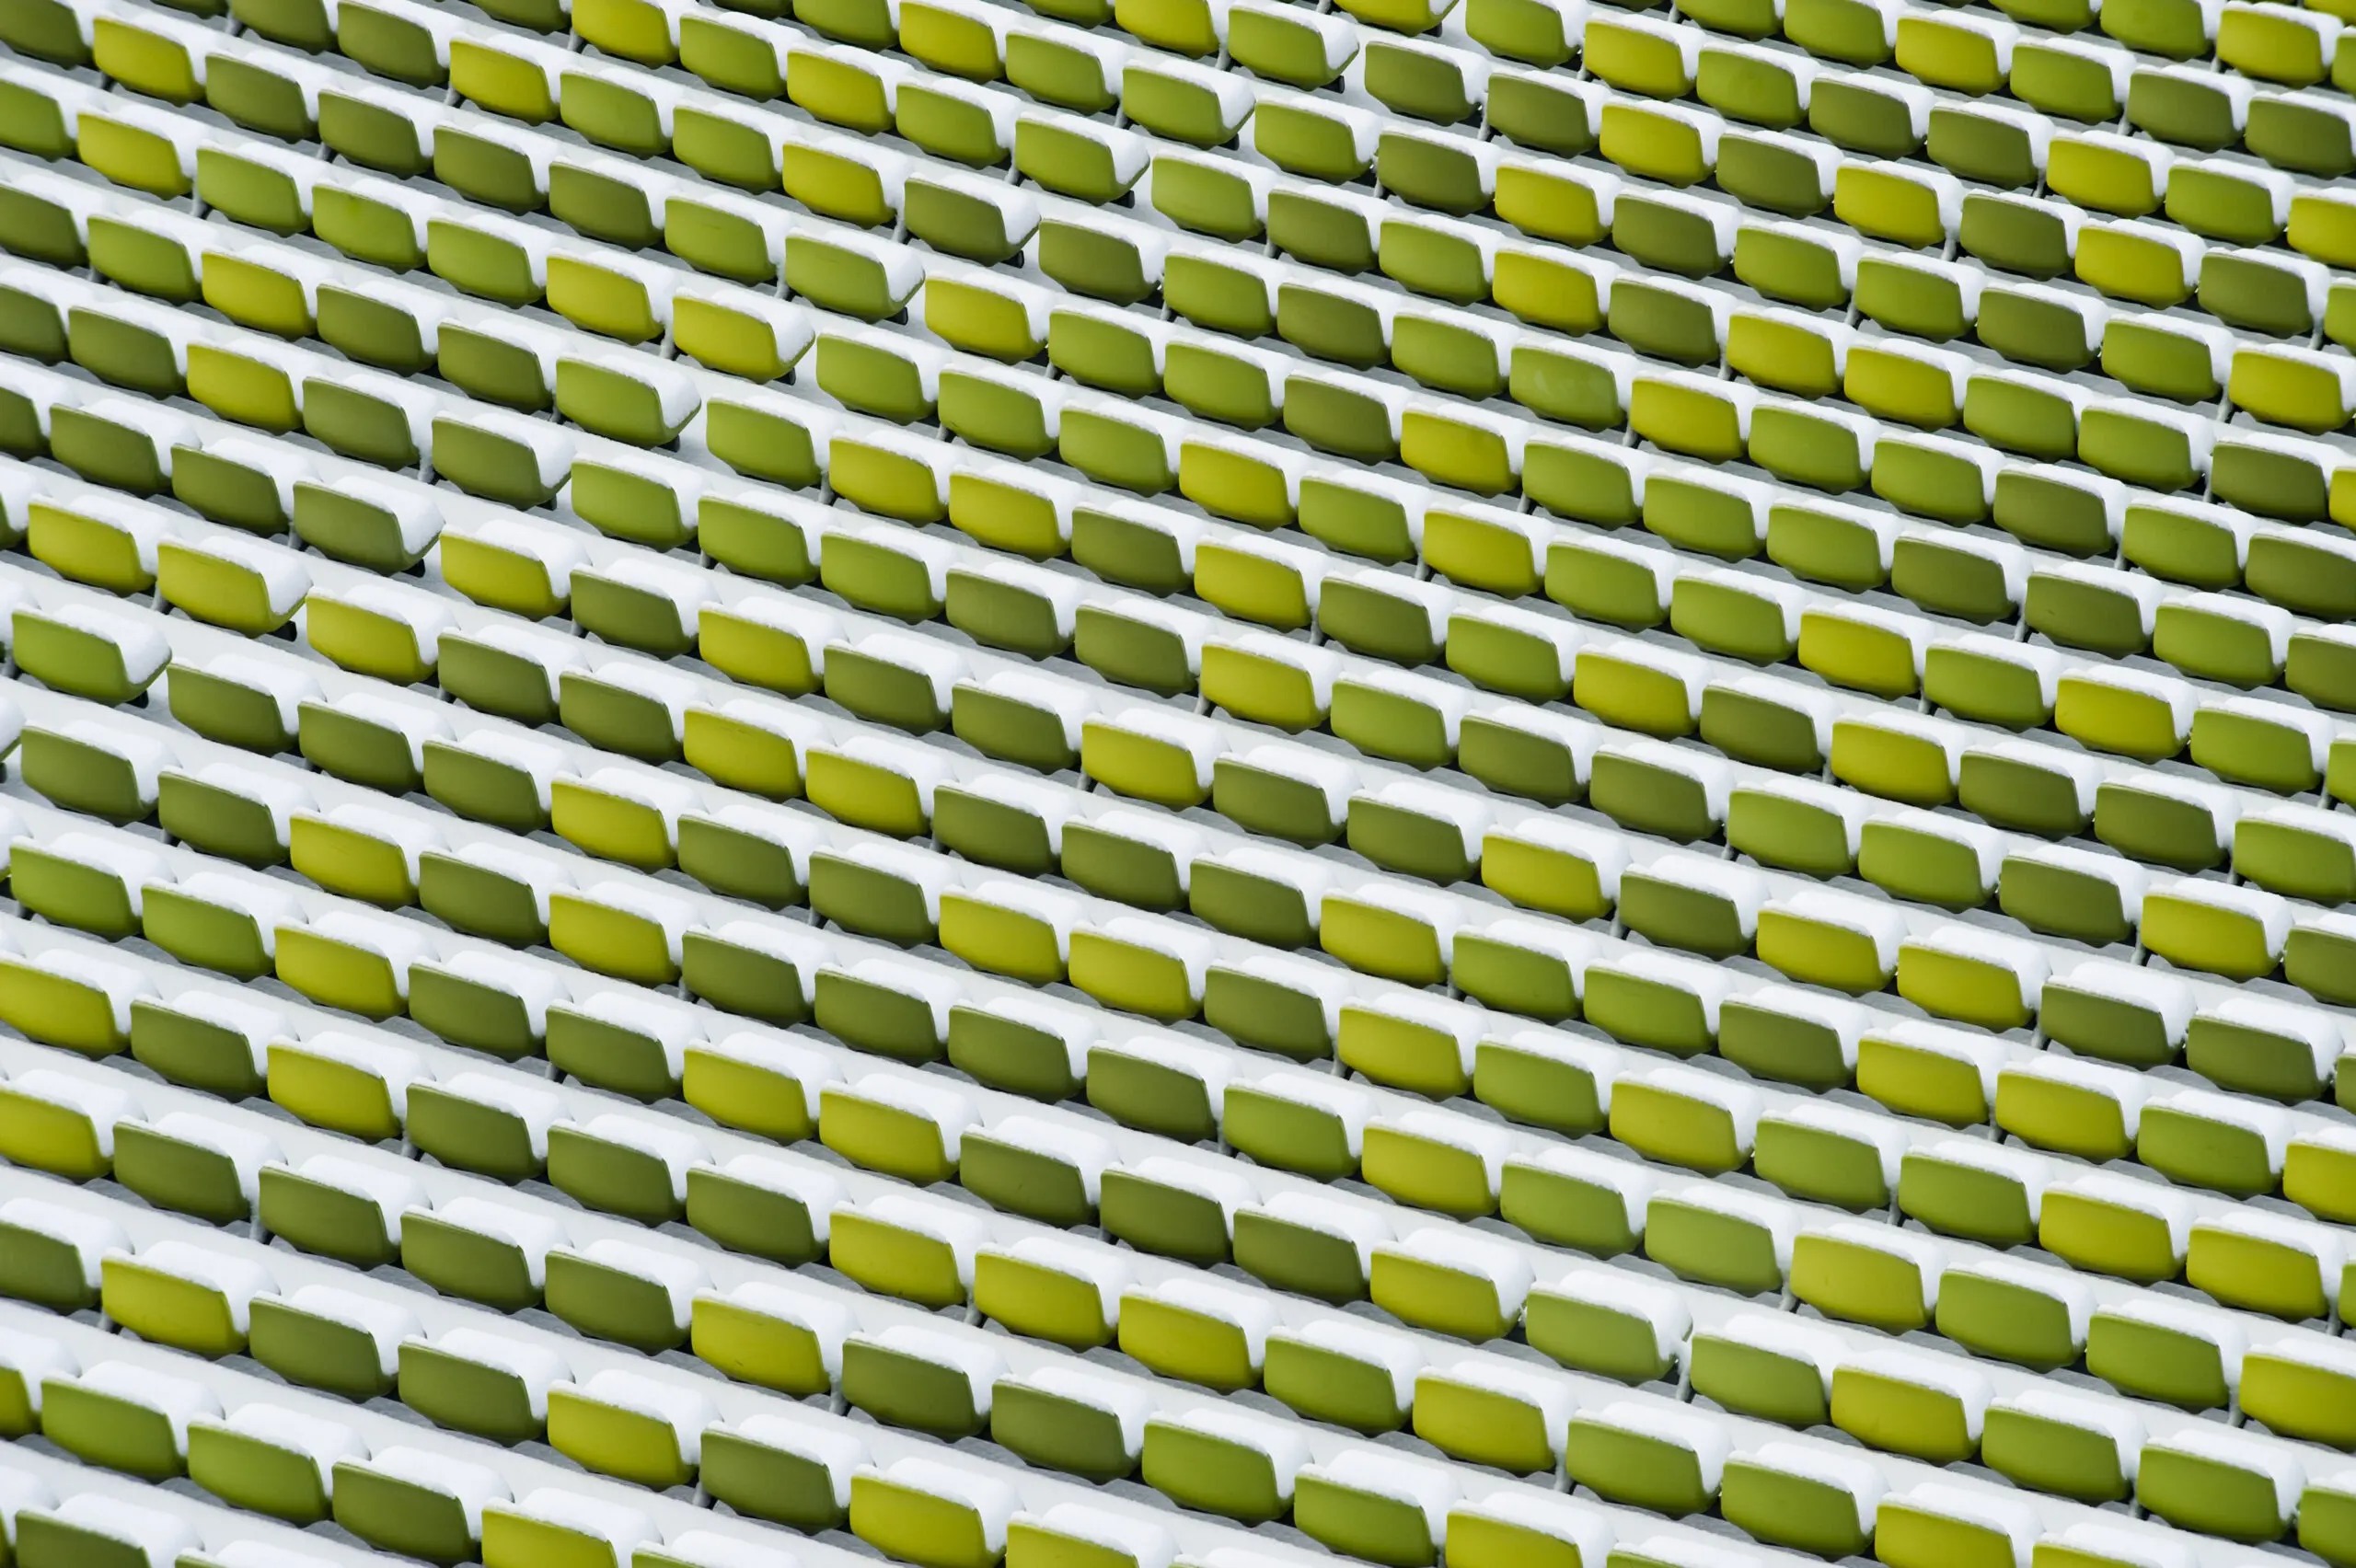 Wandbild (311) Green line präsentiert: Details und Strukturen,Architektur,Abstrakt,Detailaufnahmen